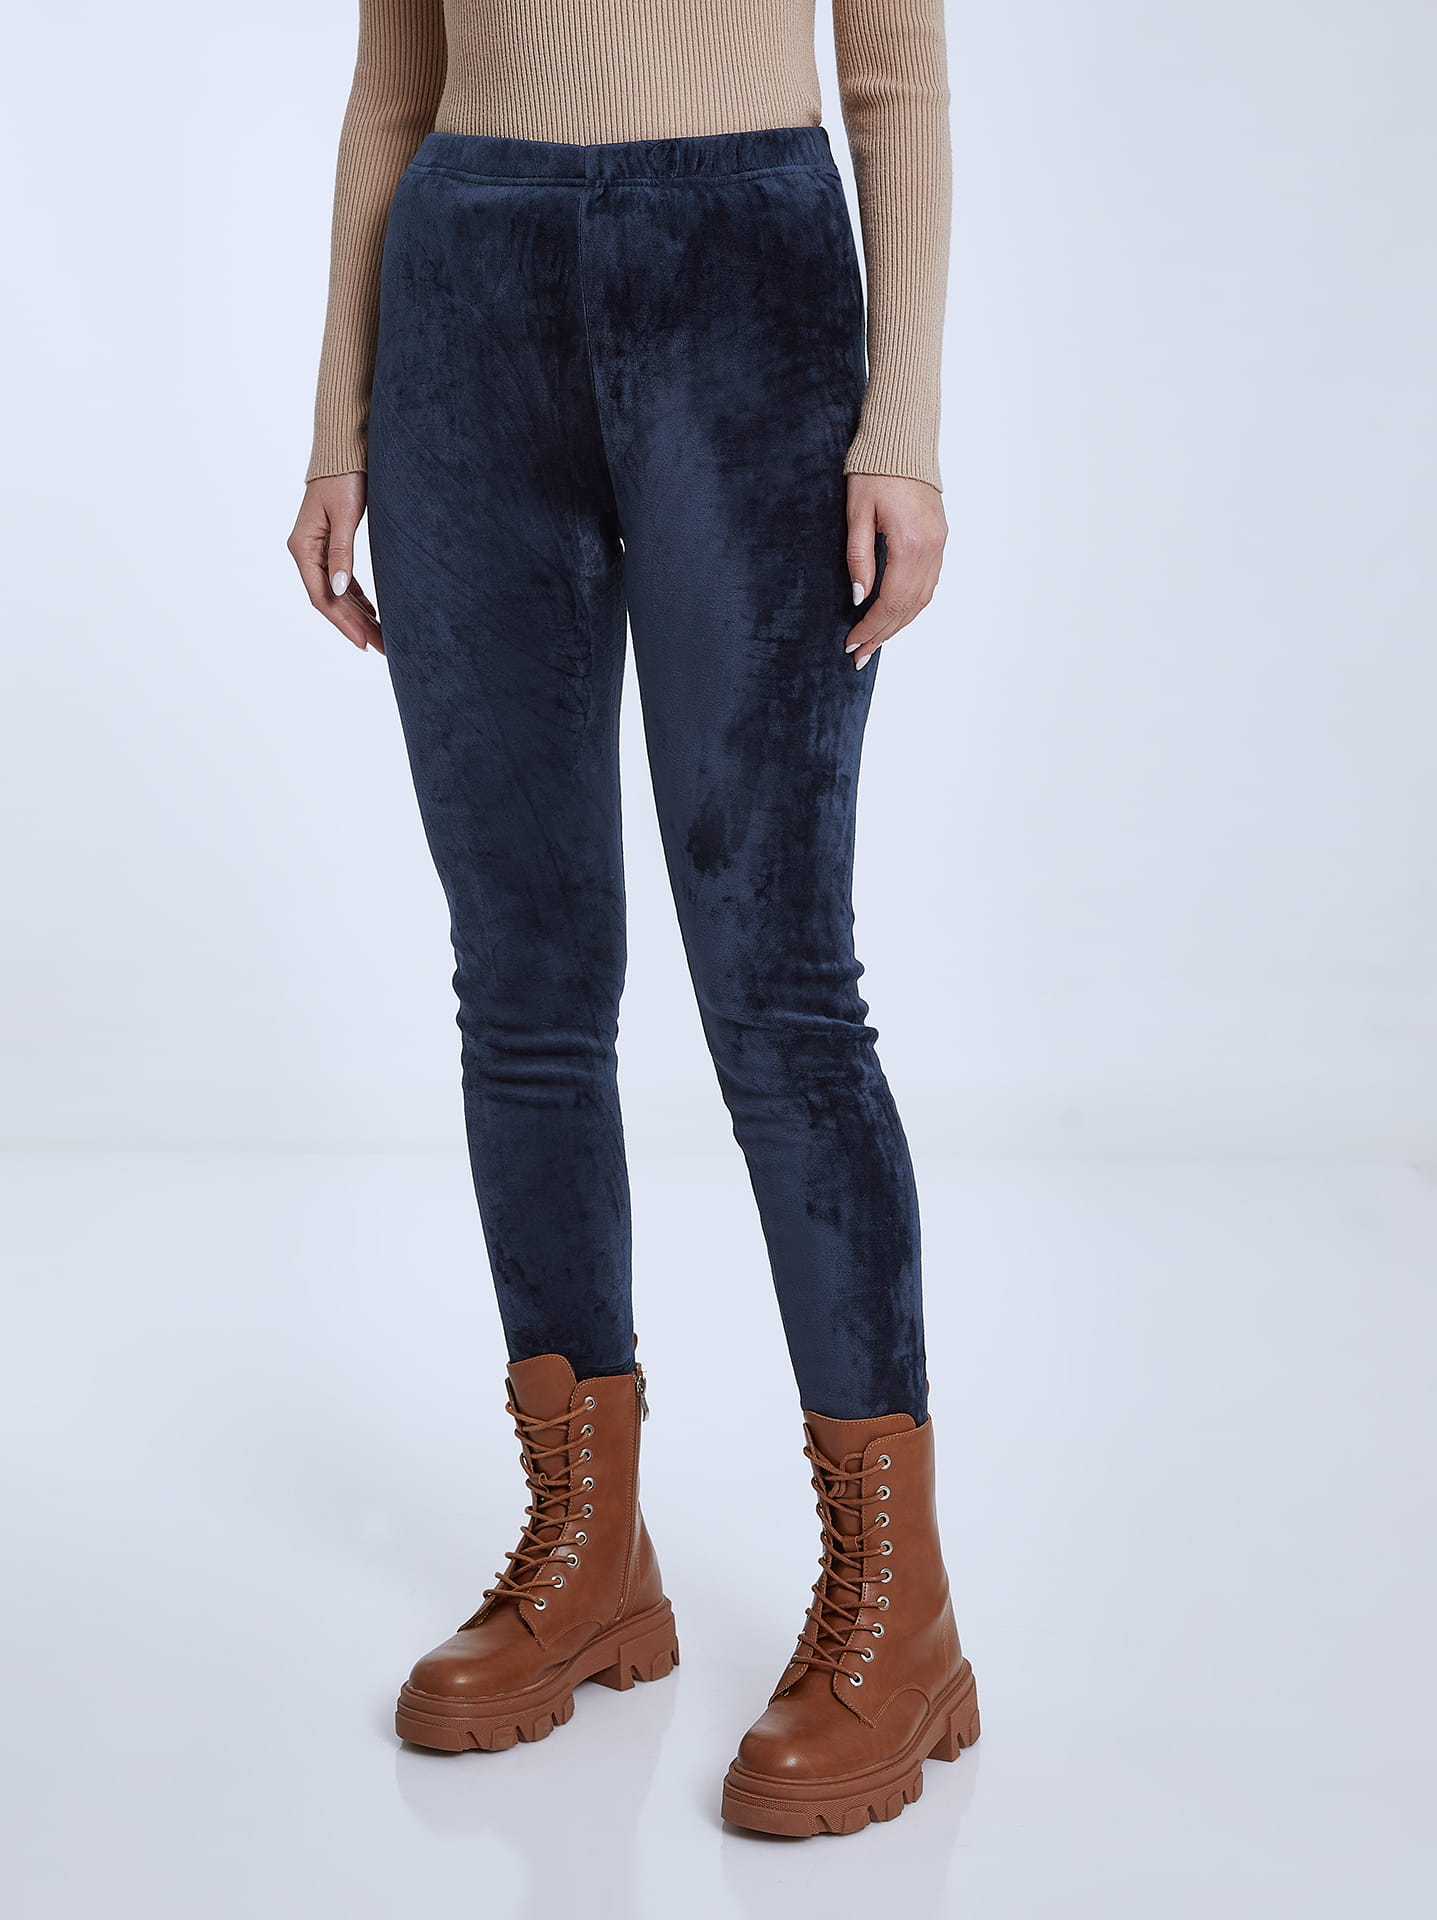 Velvet leggings with fleece lining in dark blue, 7.99€